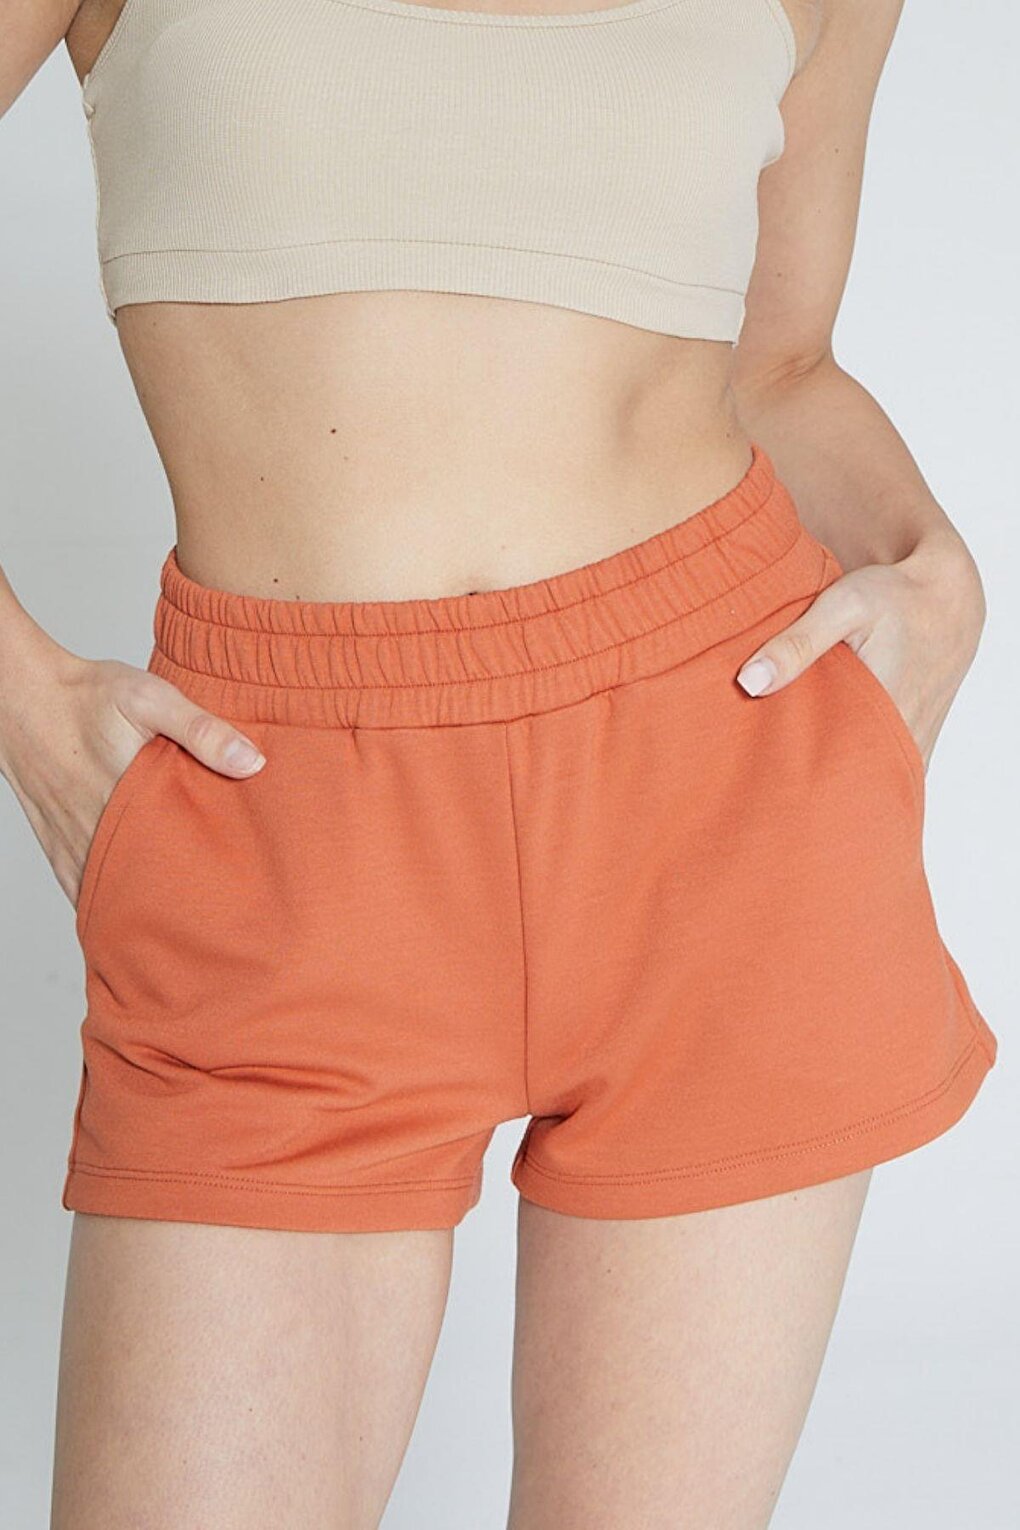 цена Оранжевые женские короткие шорты Soft Touch Chandraswear